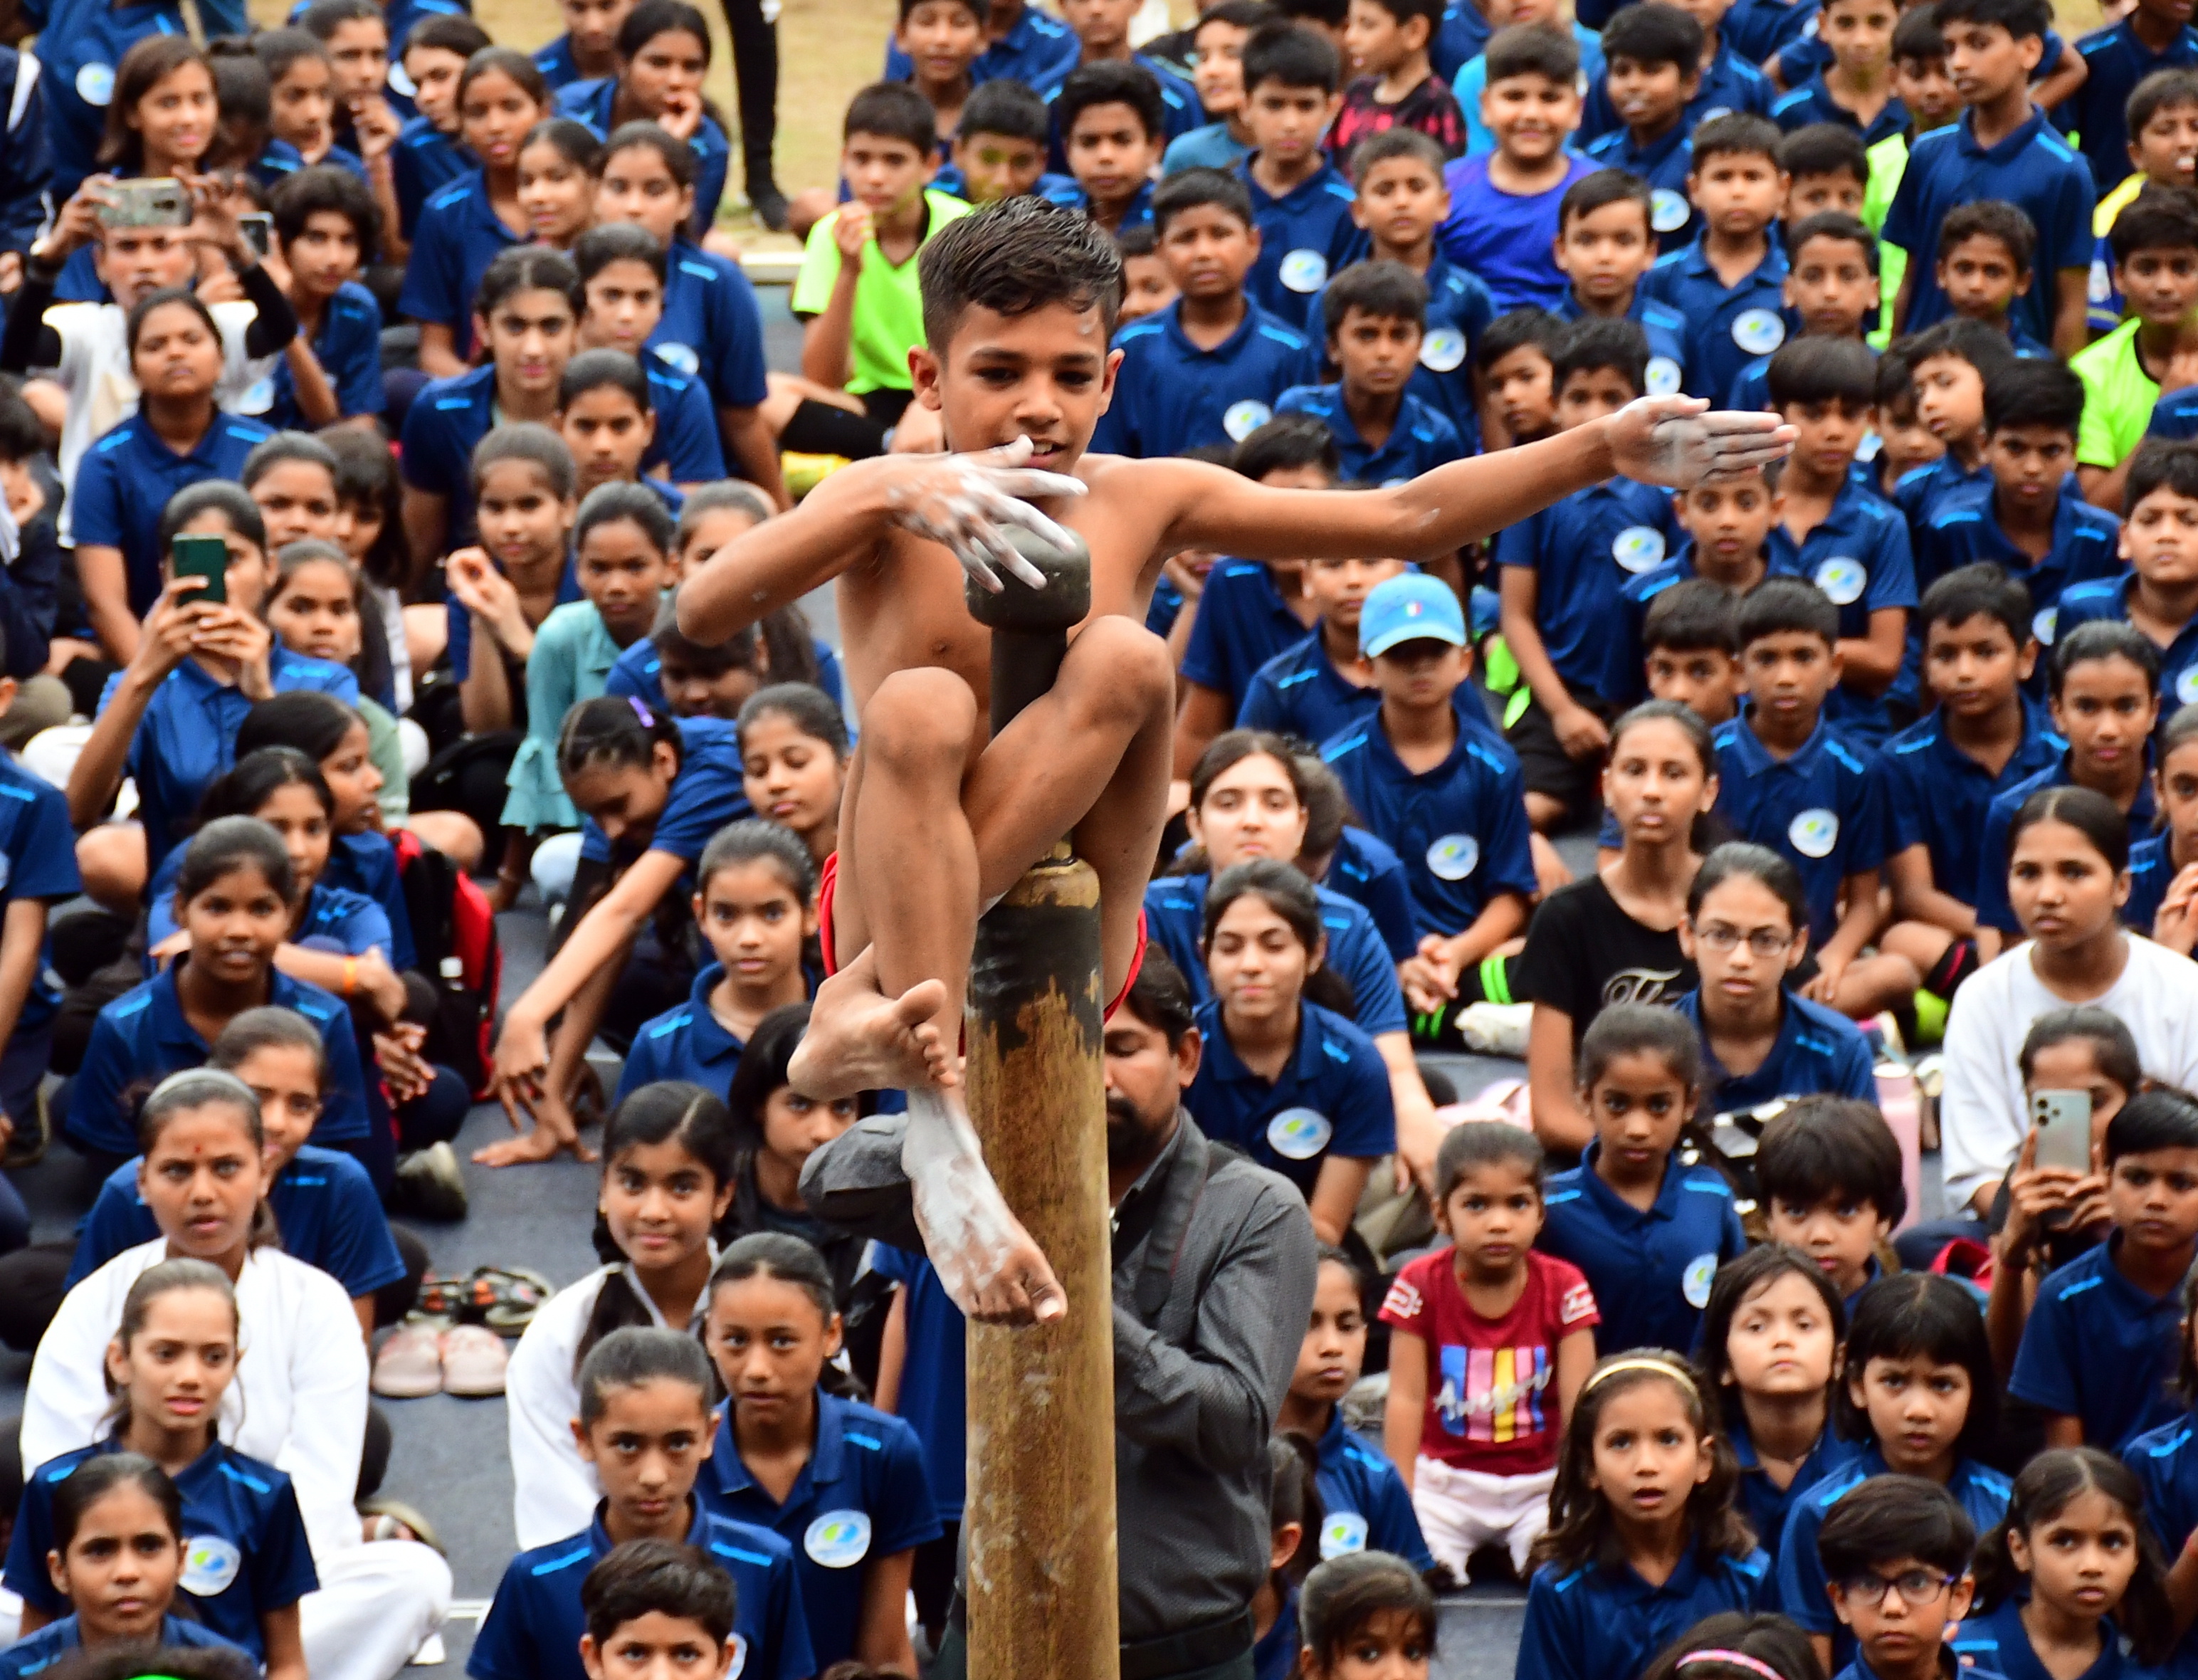 भोपाल @पत्रिका दो महीने बाद समर कैंप का समापन समारोह मे मलखम में दिखाया बच्चो ने
कमाल